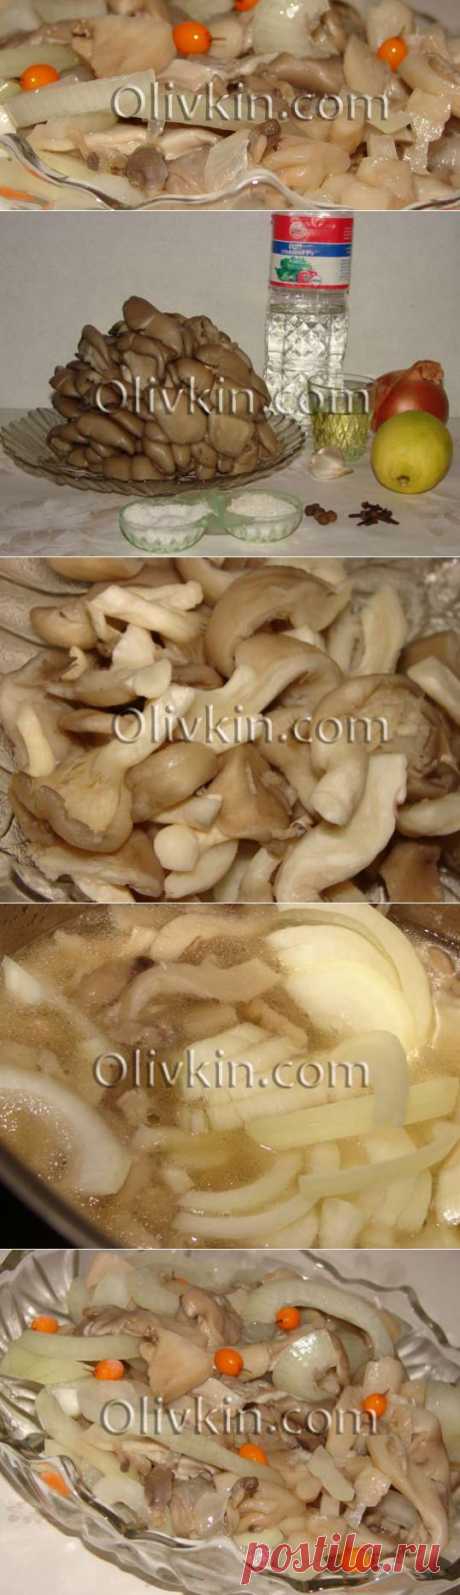 Пошаговый рецепт как мариновать грибы вешенки